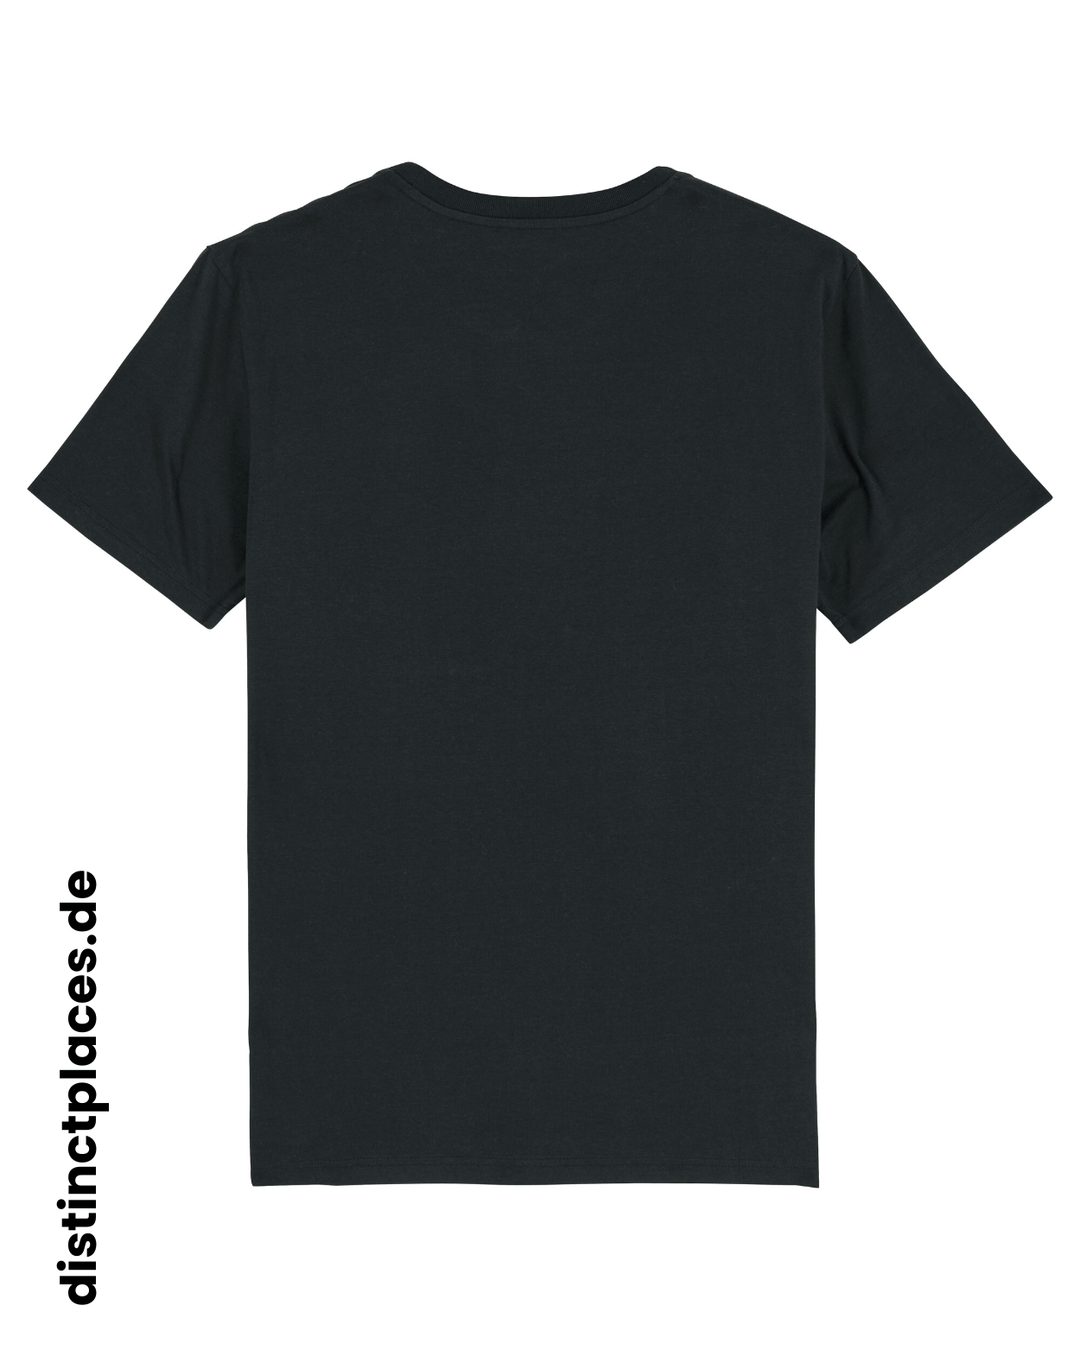 Schwarzes fairtrade, vegan und bio-baumwoll T-Shirt von hinten mit einem minimalistischem weißen Logo, beziehungsweise Schriftzug für Niedersachsen